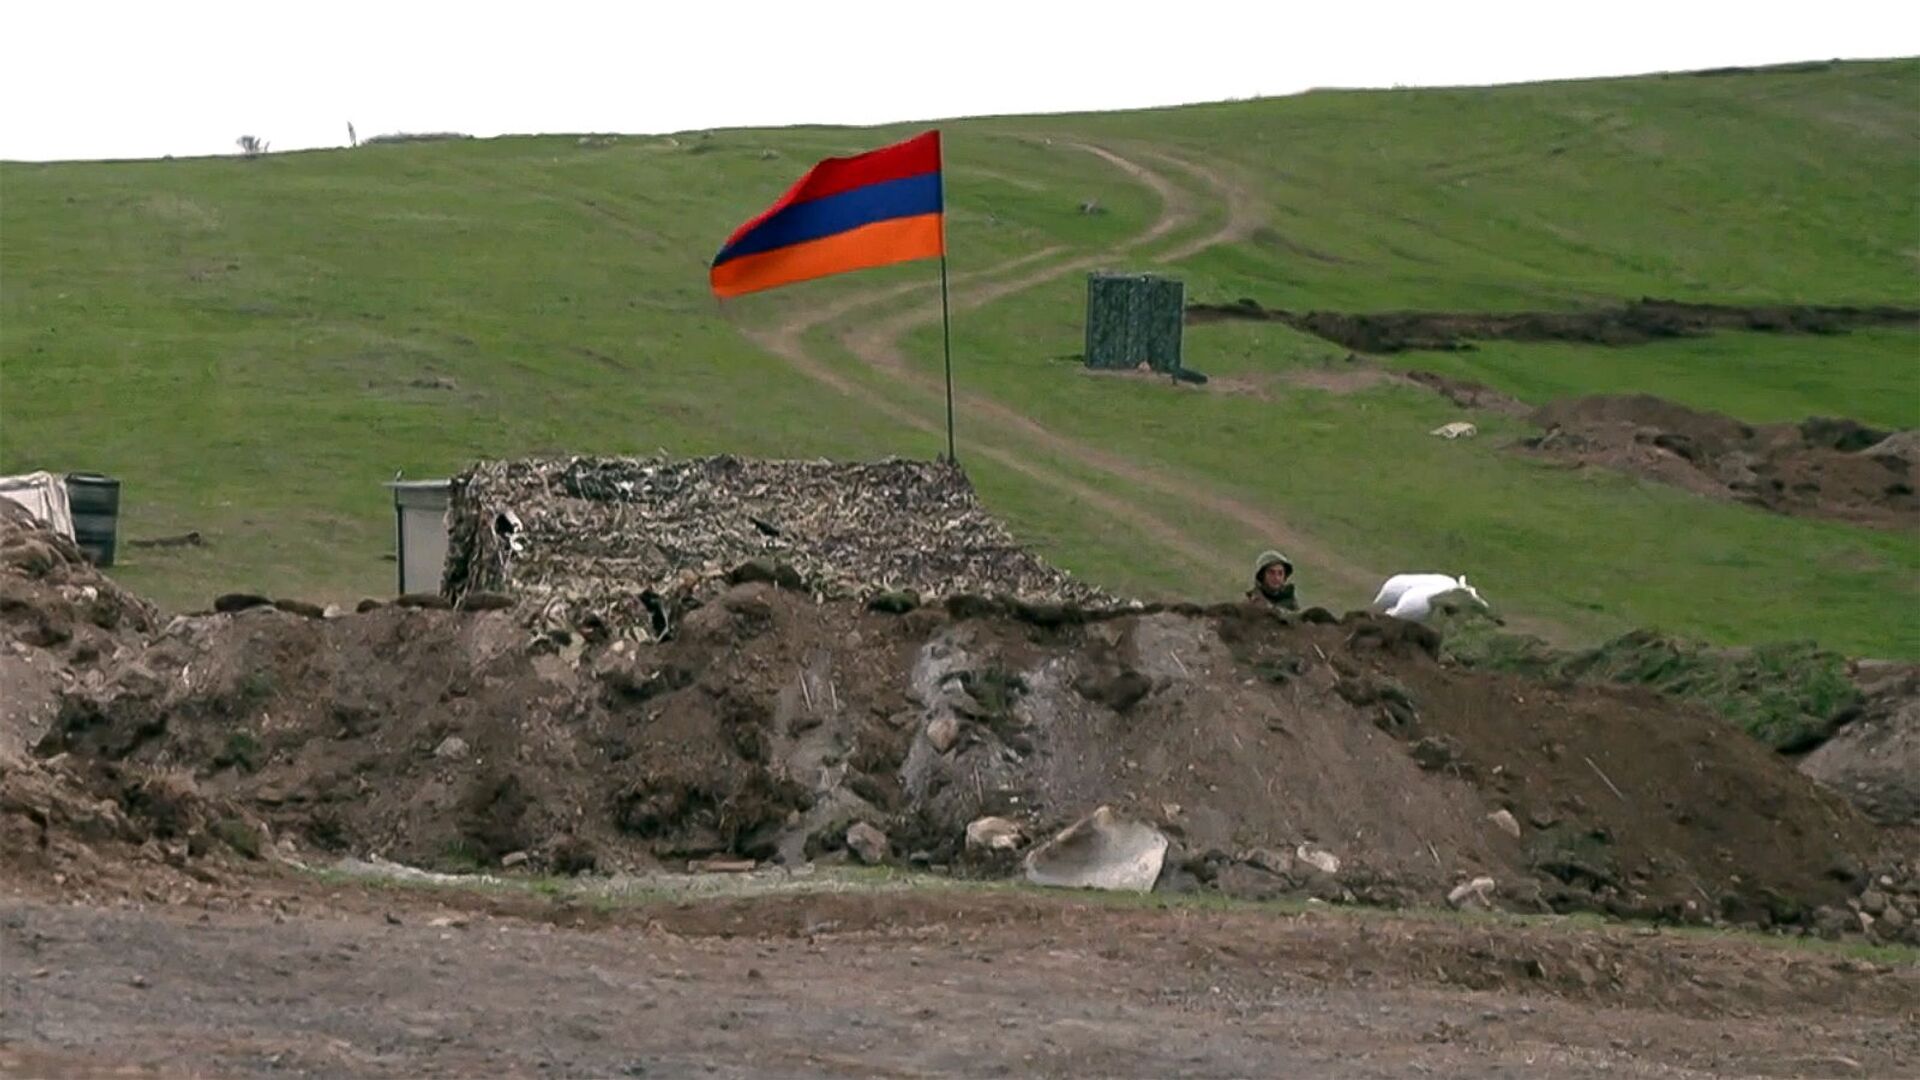 Армянский военнослужащий на армяно-азербайджанской границе - Sputnik Армения, 1920, 29.04.2021